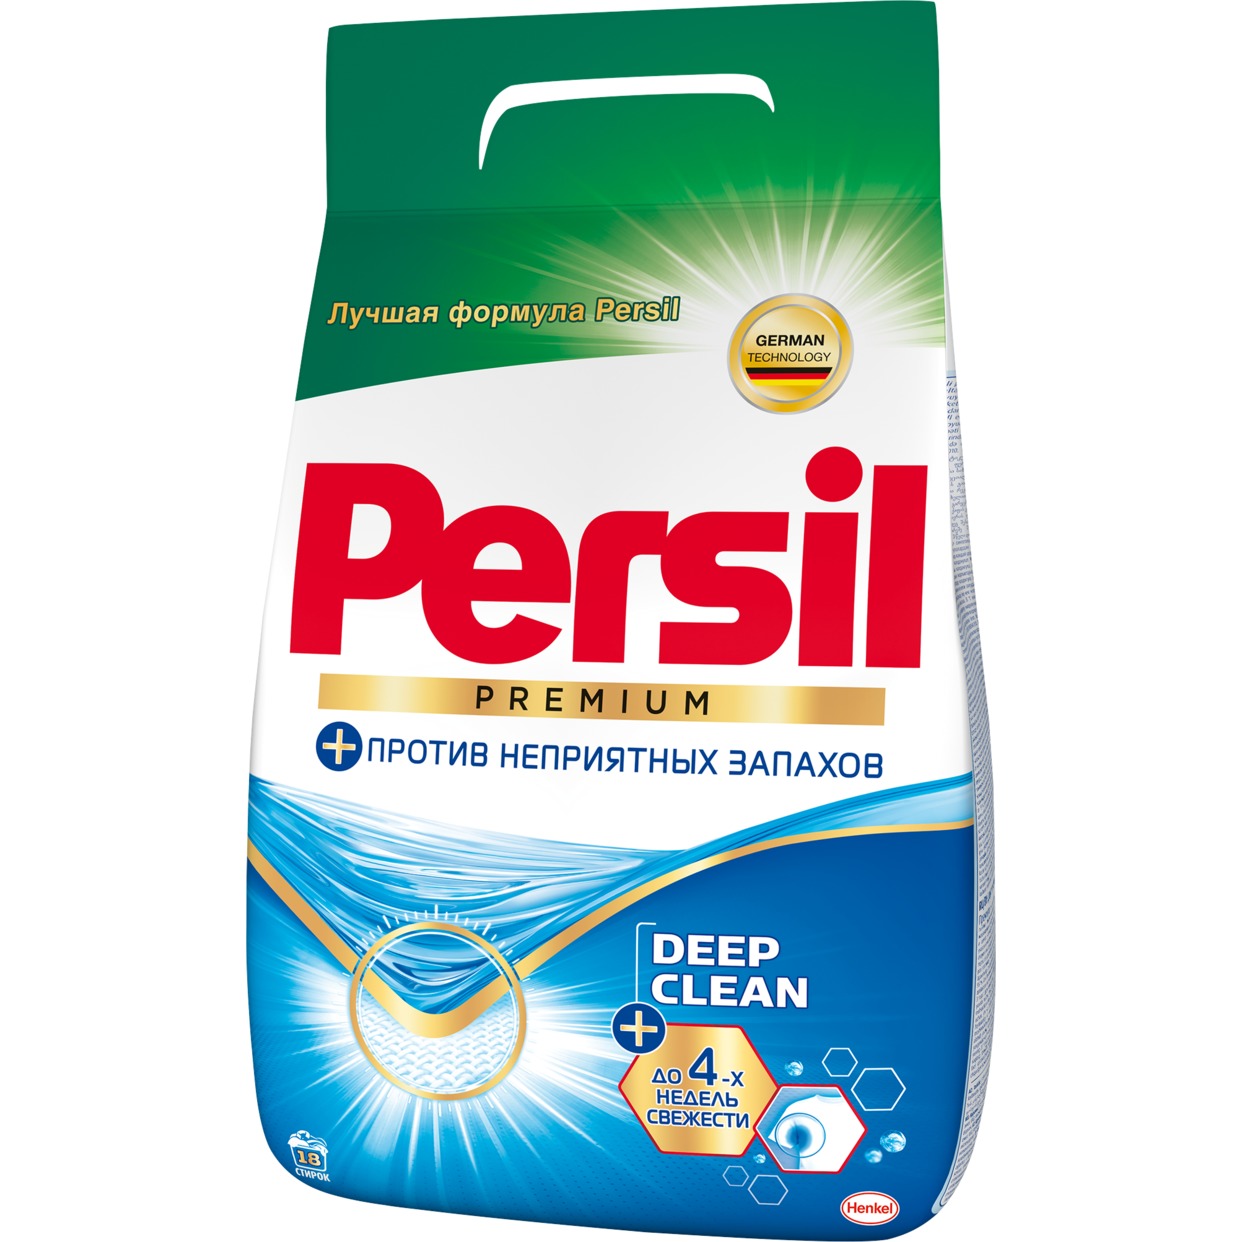 Стиральный порошок Persil Premium 2.43кг по акции в Пятерочке